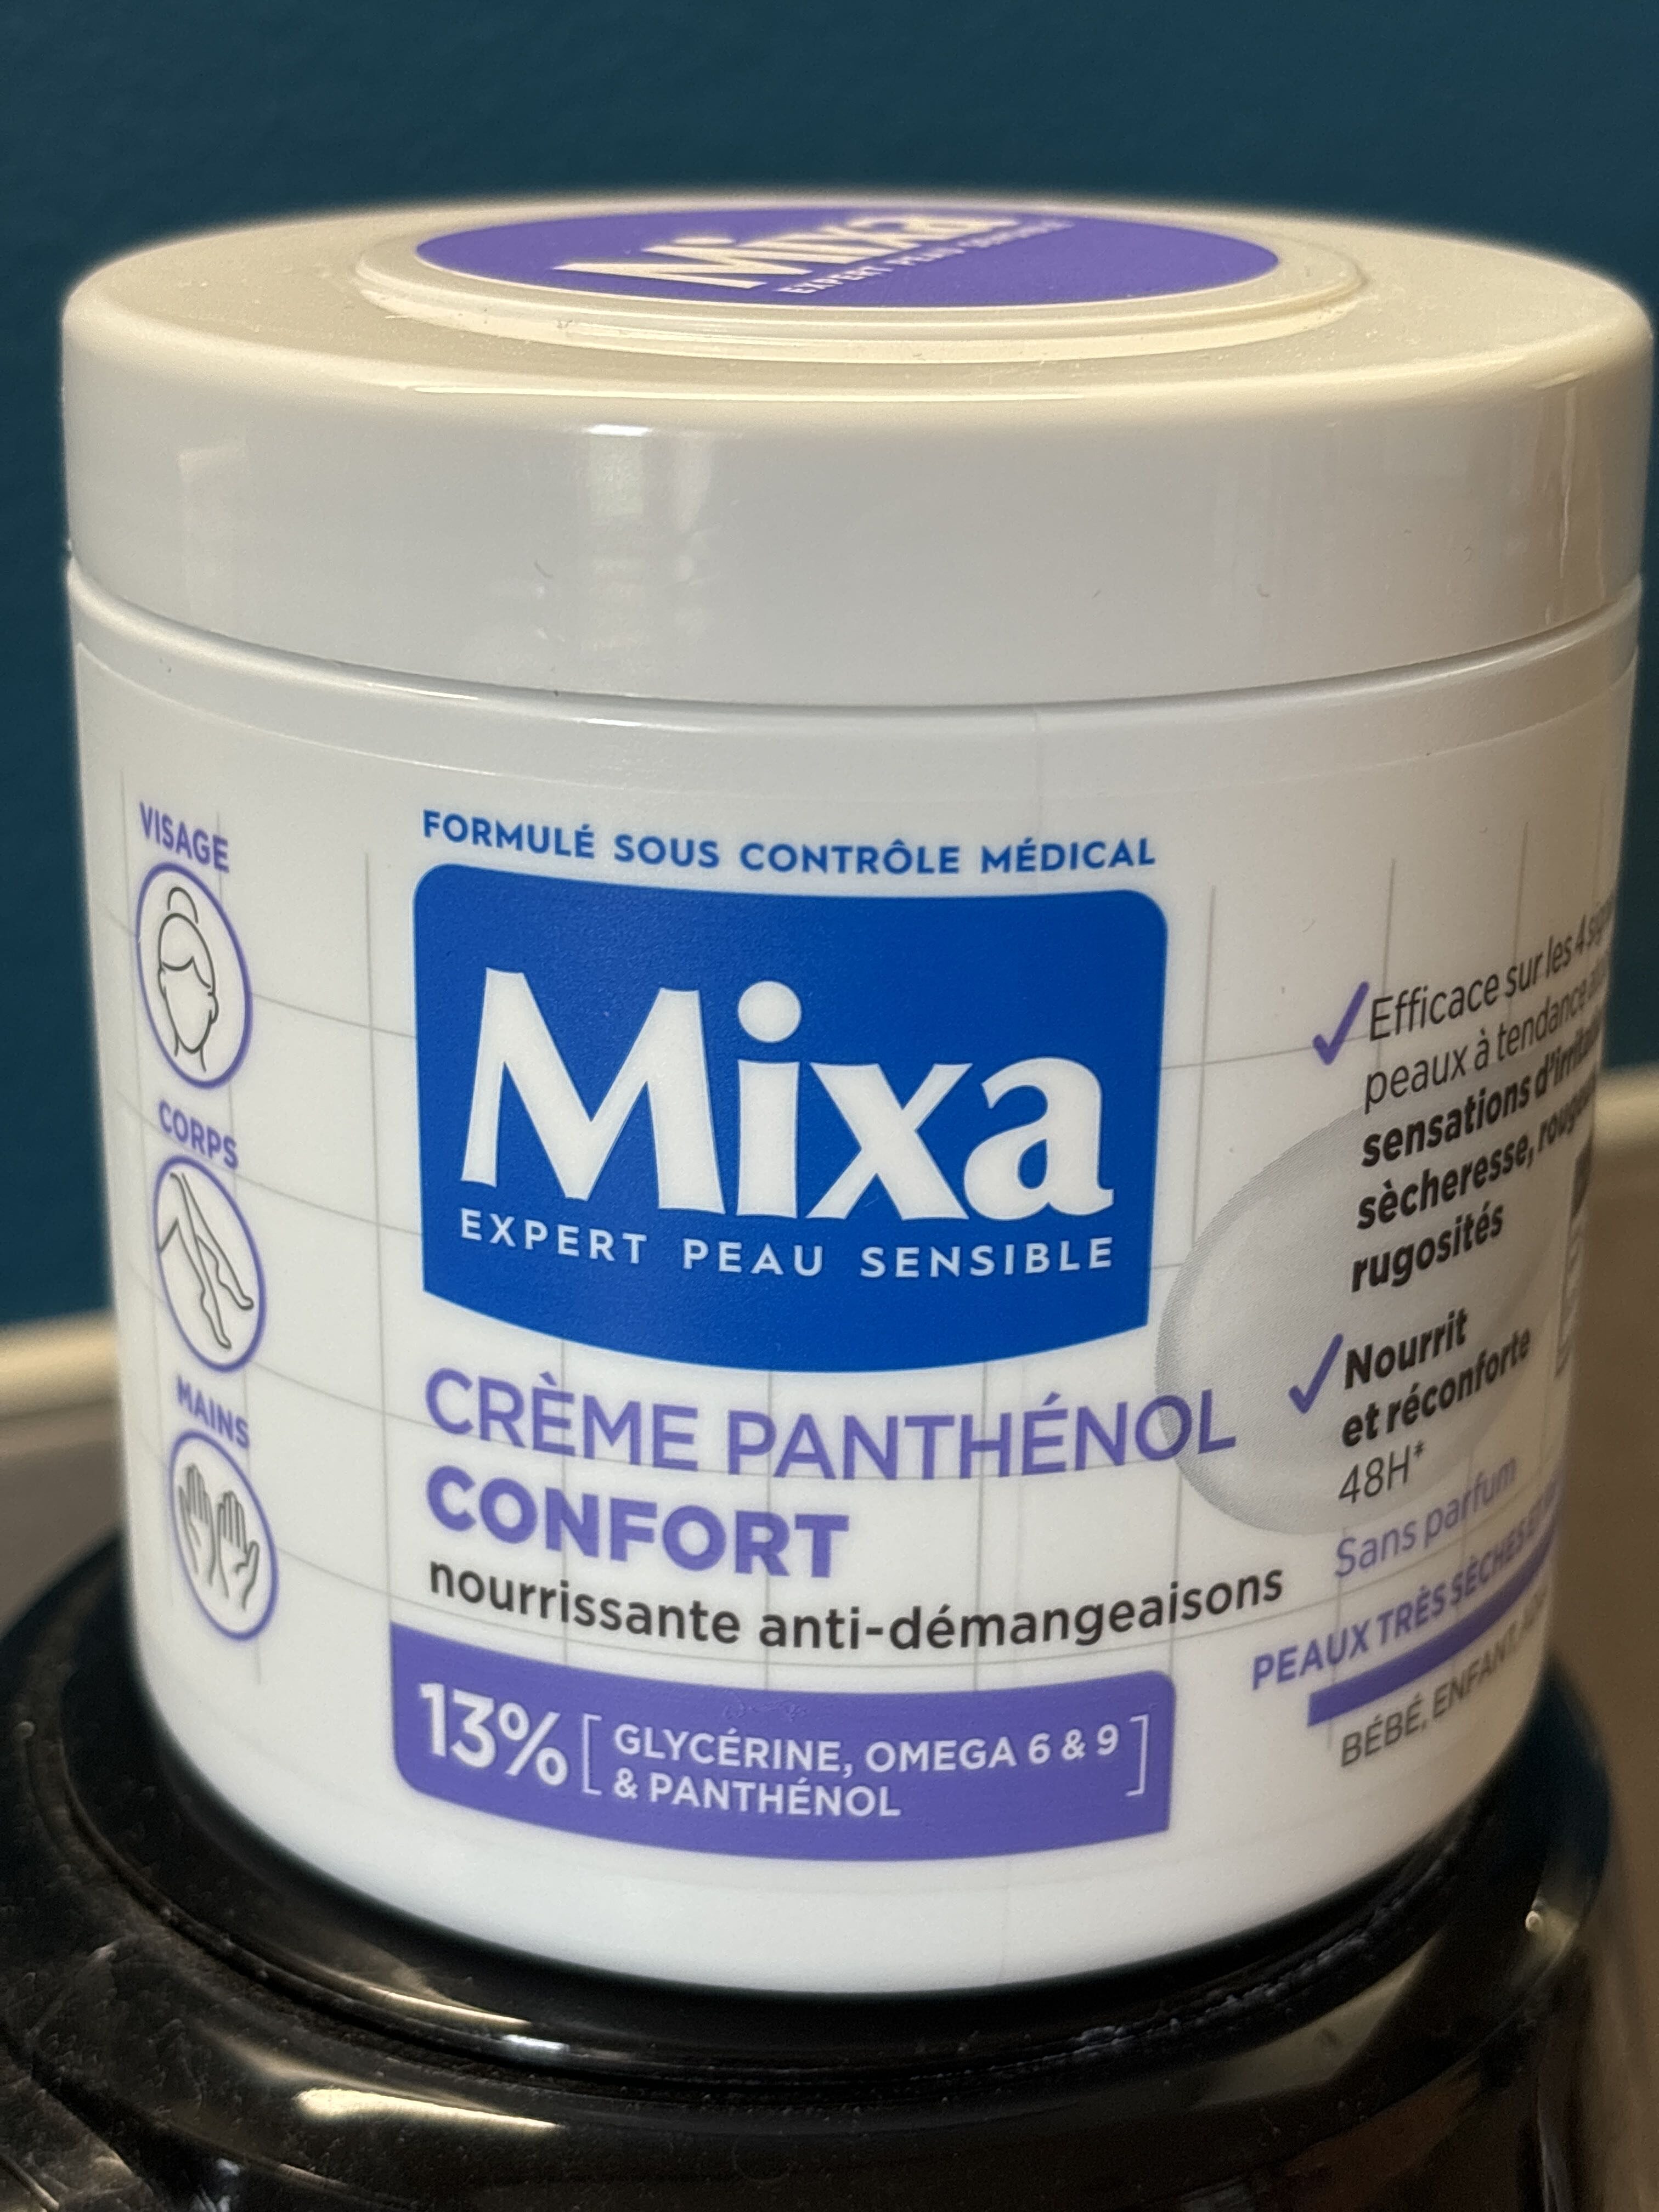 Mixa expert peau sensible - Продукт - fr